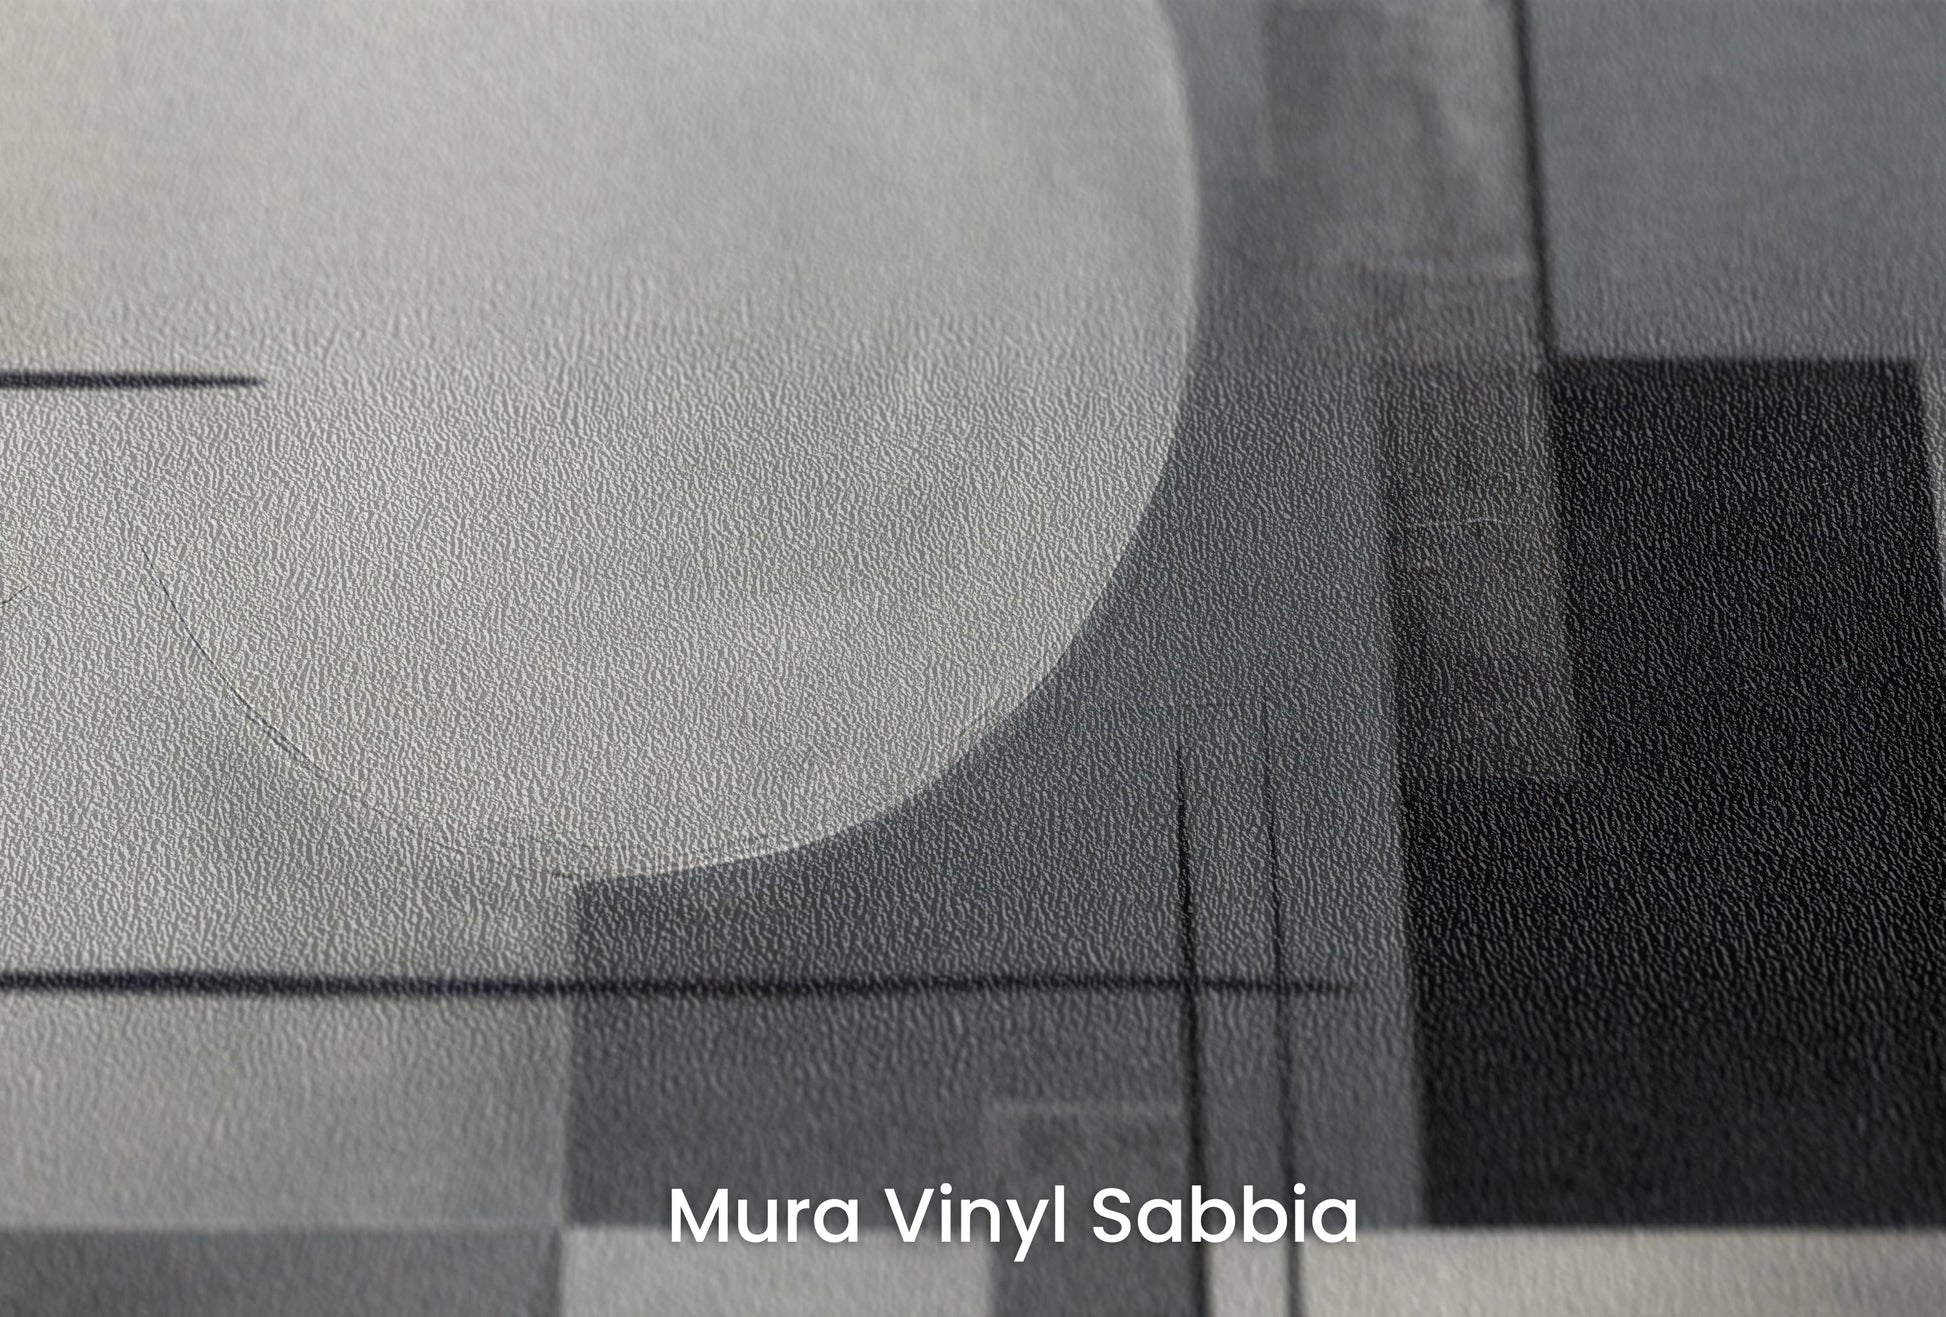 Zbliżenie na artystyczną fototapetę o nazwie Monochrome Geometry #3 na podłożu Mura Vinyl Sabbia struktura grubego ziarna piasku.